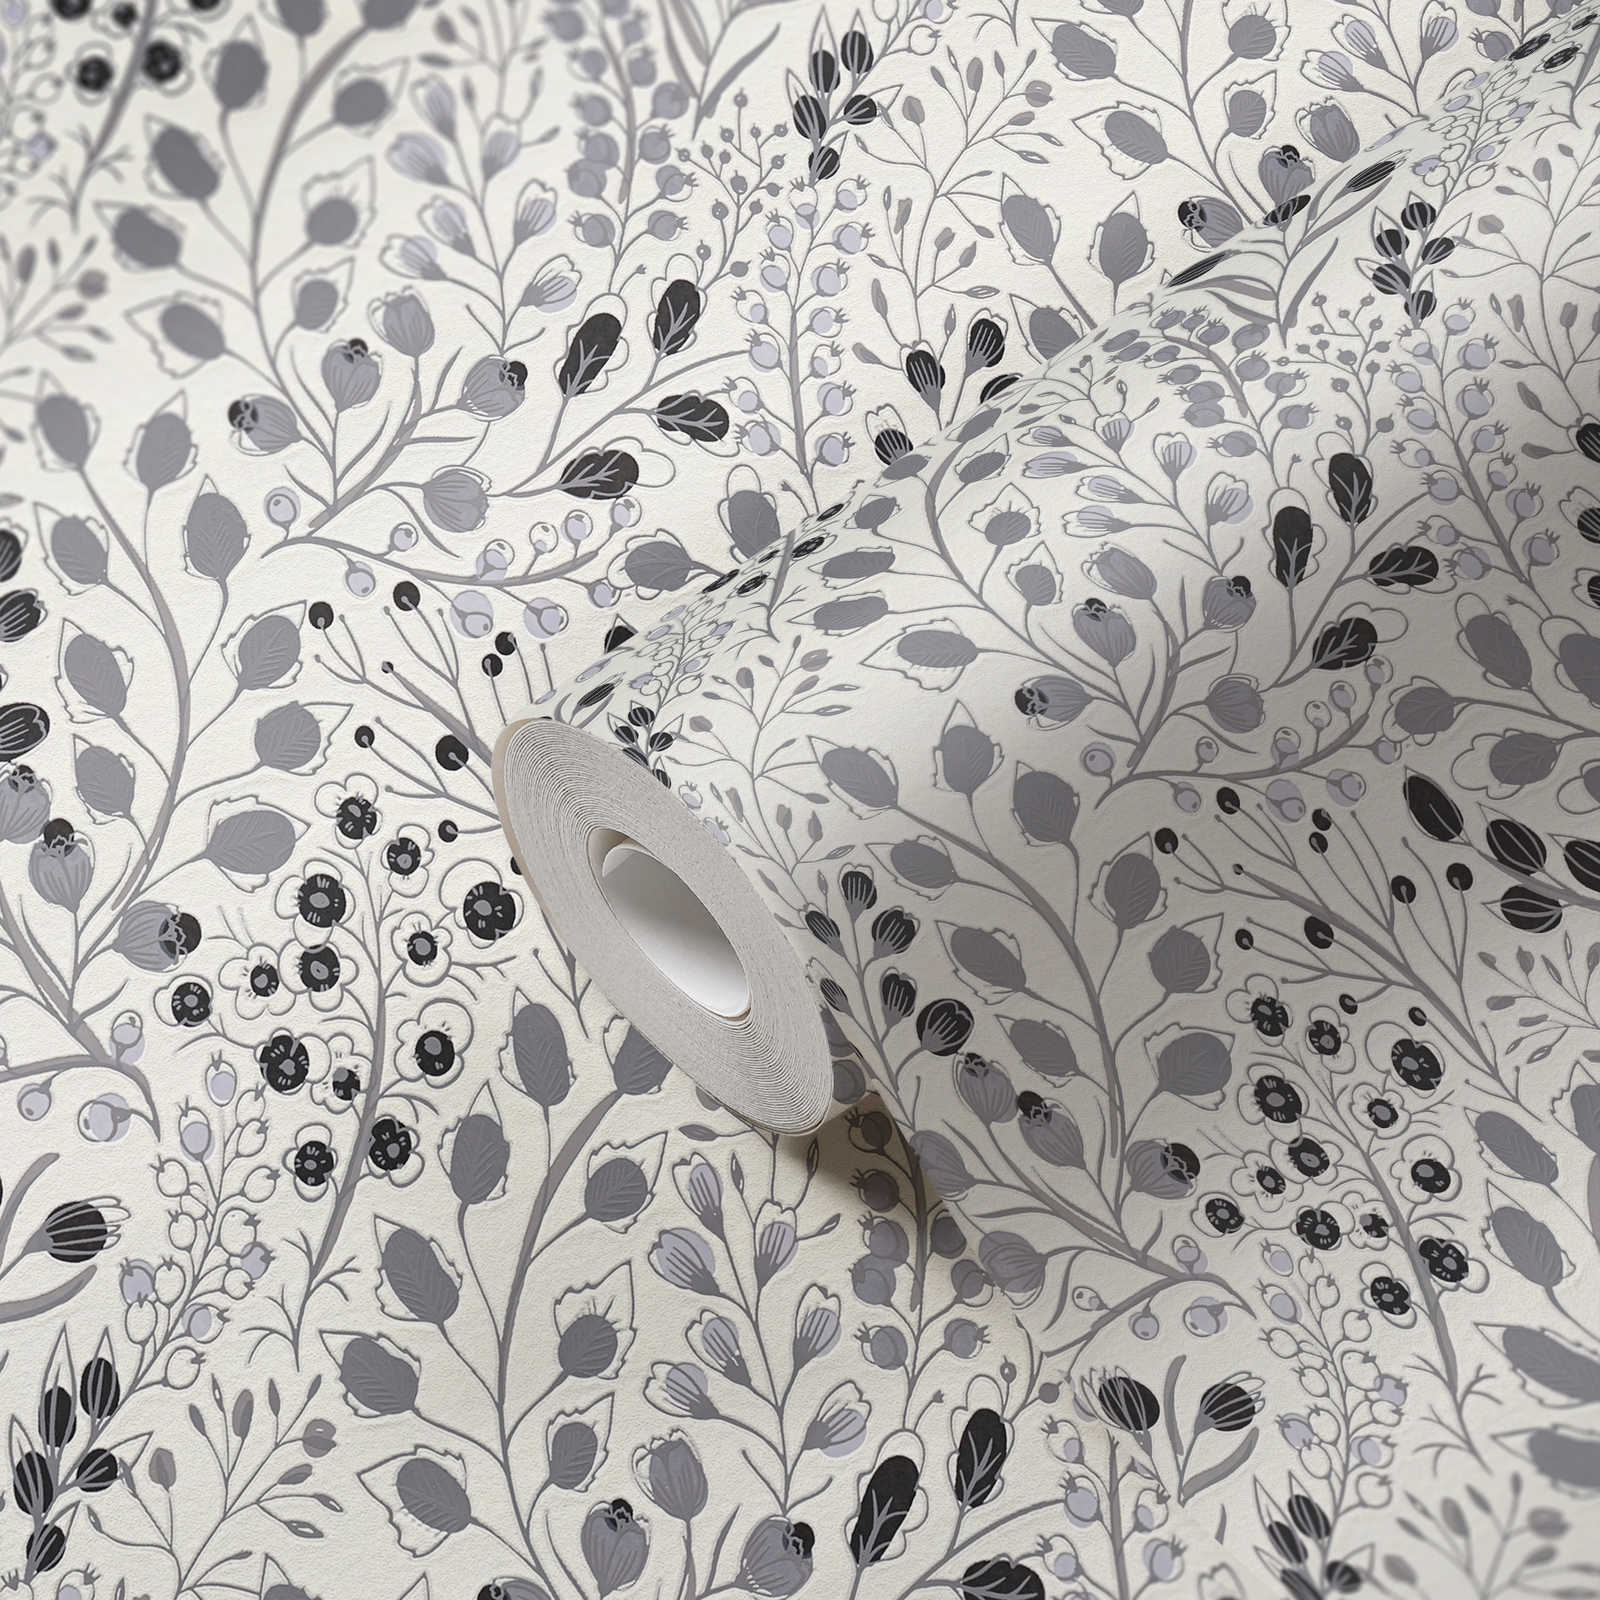             Papier peint abstrait floral style dessin mat - gris, blanc, noir
        